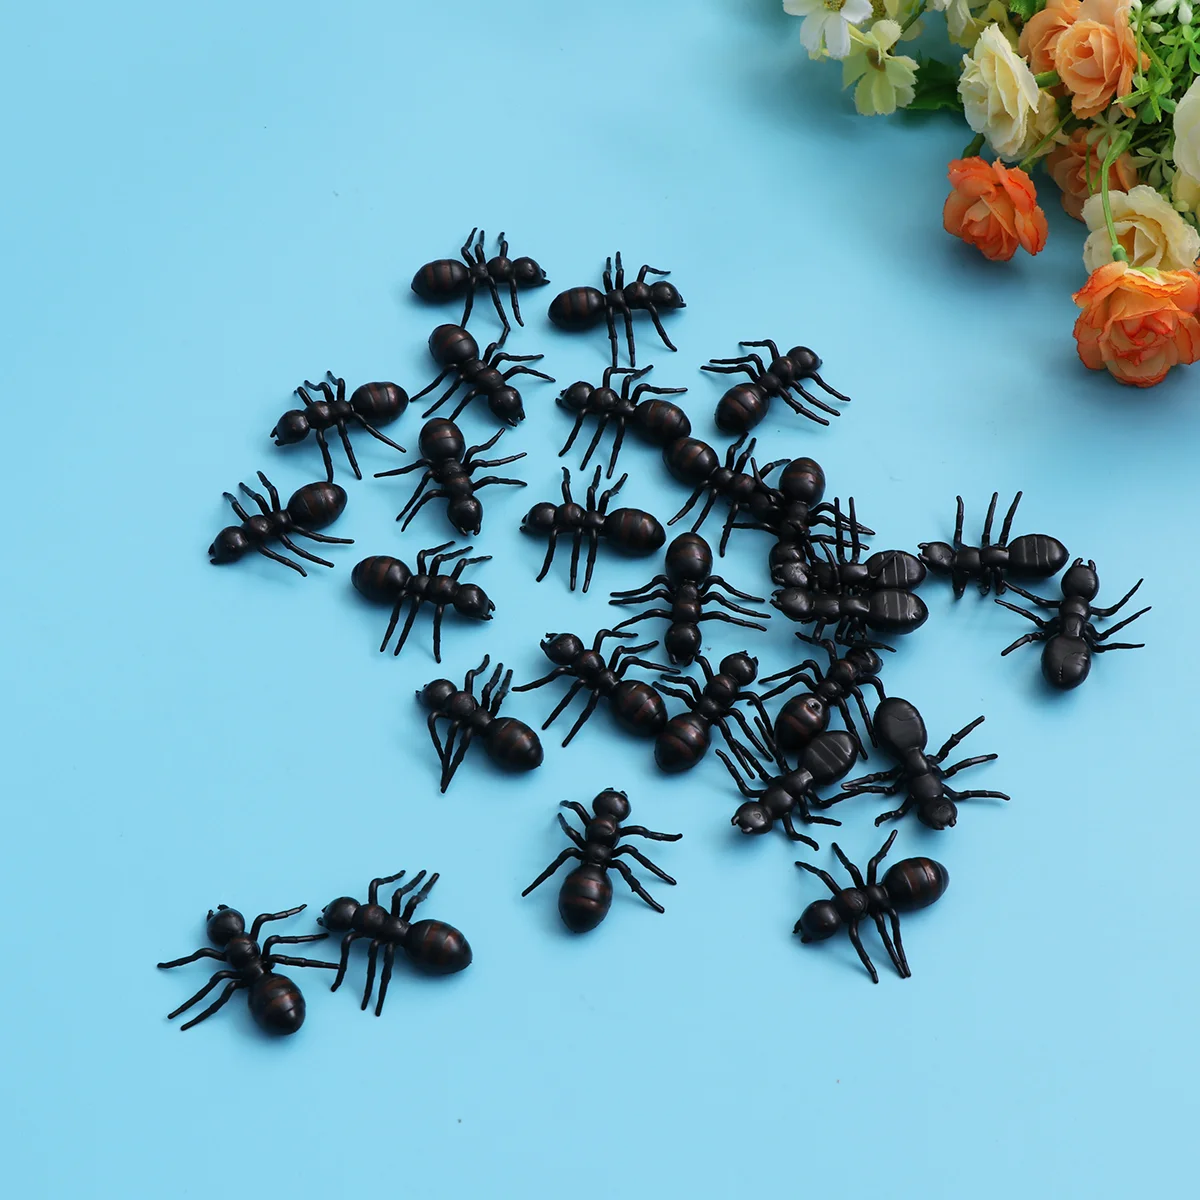 

Муравьи игрушки Хэллоуин пластиковые насекомые искусственные муравьи насекомые Реалистичная игрушка для розыгрыша реквизит для пикника искусственные насекомые для детей Модель черные украшения насекомые